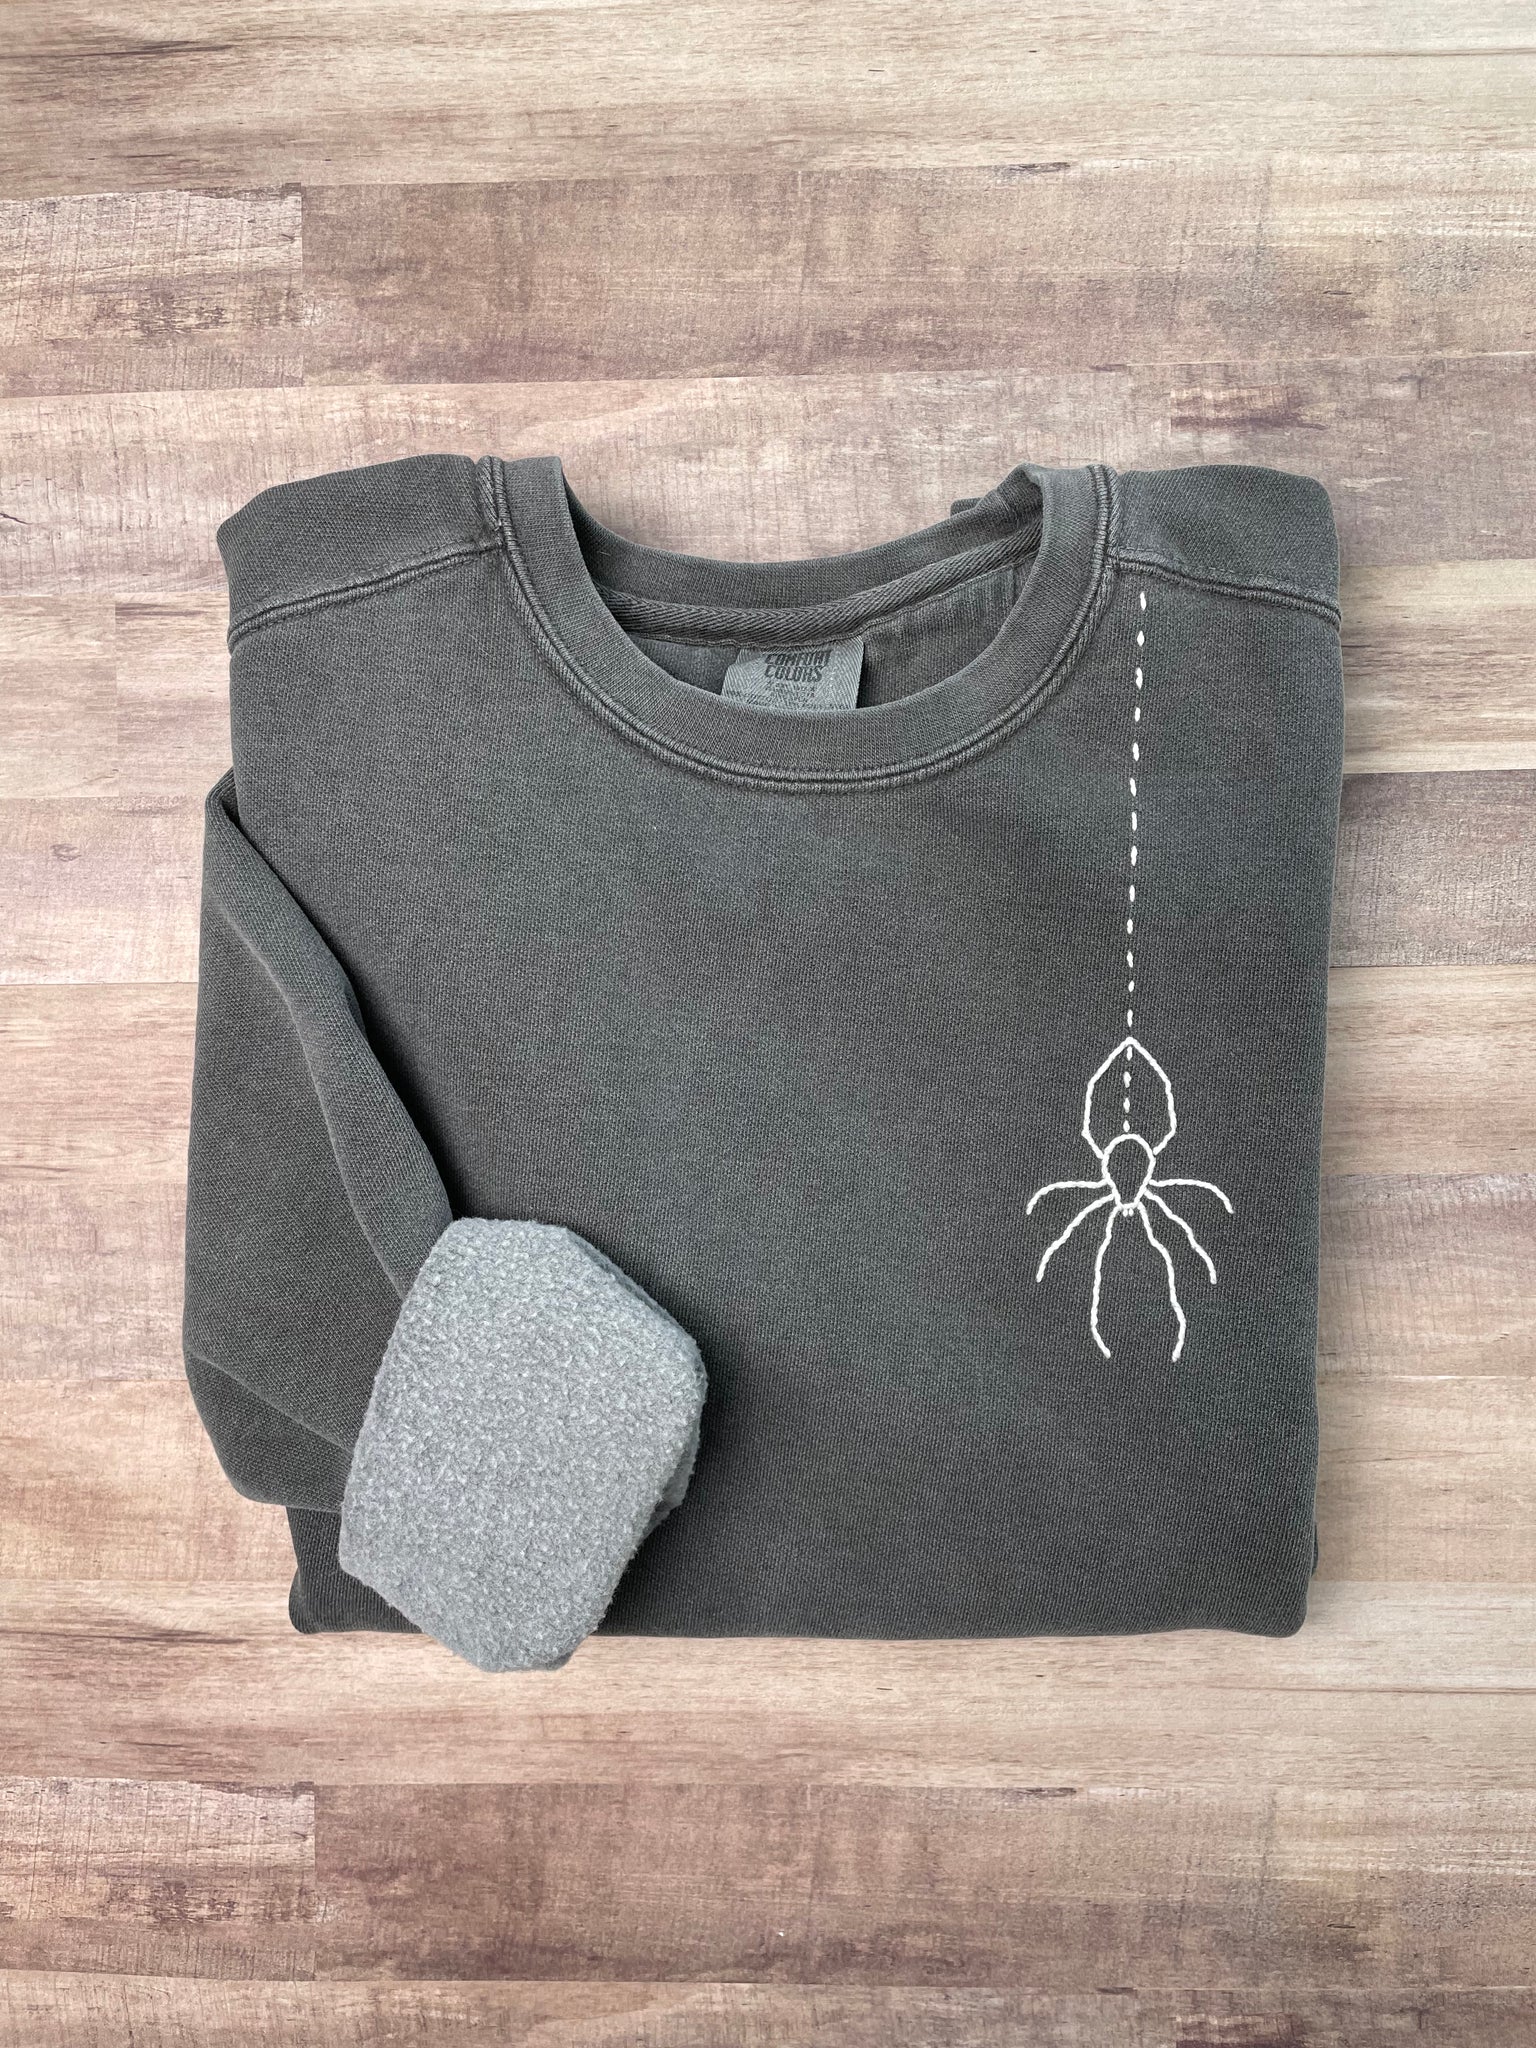 Spooky Spider Hand Stitched Sweatshirt